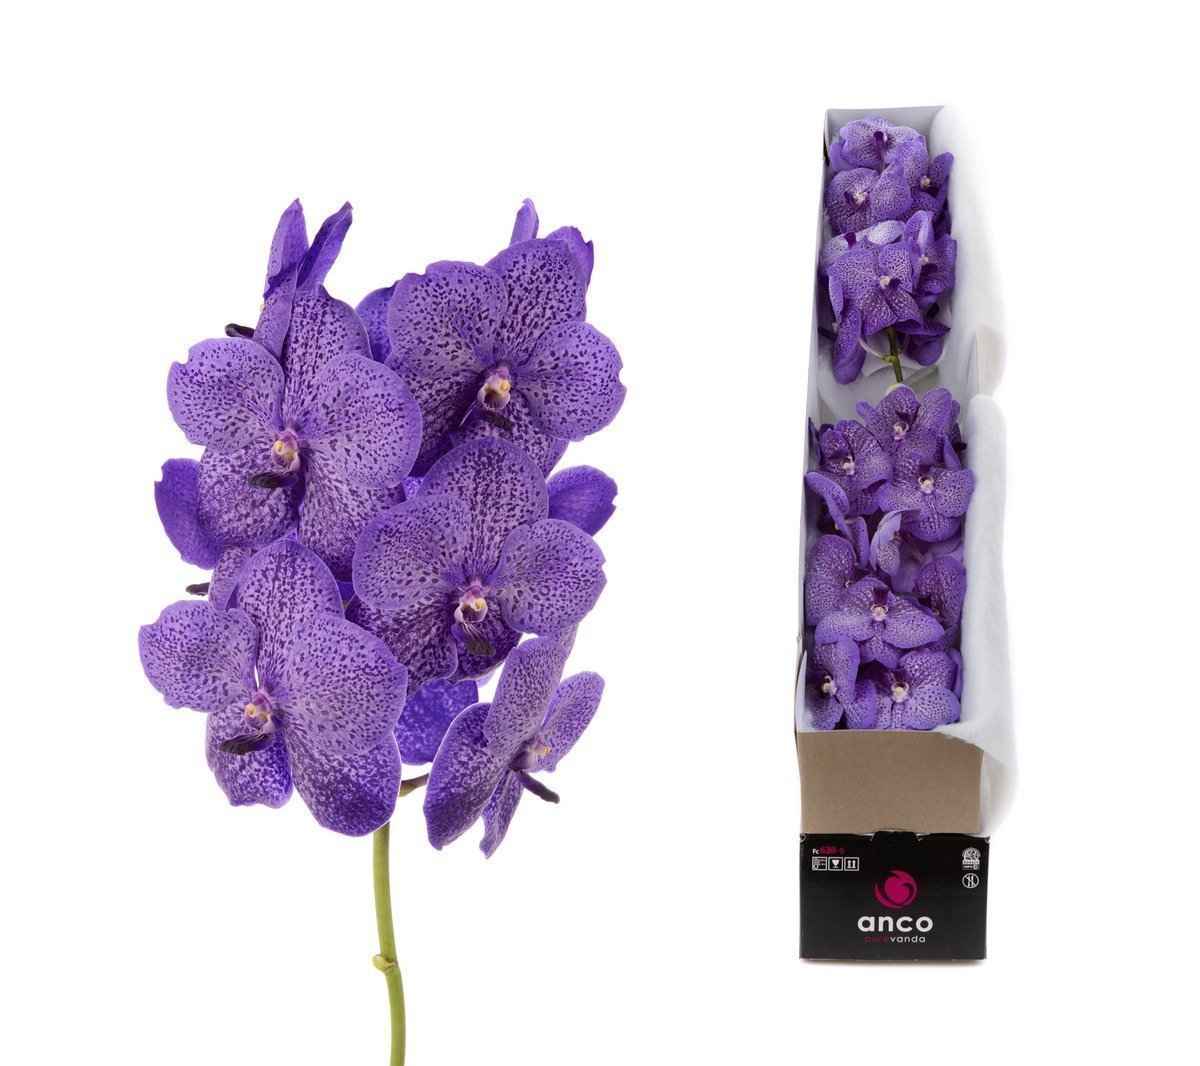 Срезанные цветы оптом Vanda sunanda lavender sprinkles per stem от 4шт из Голландии с доставкой по России